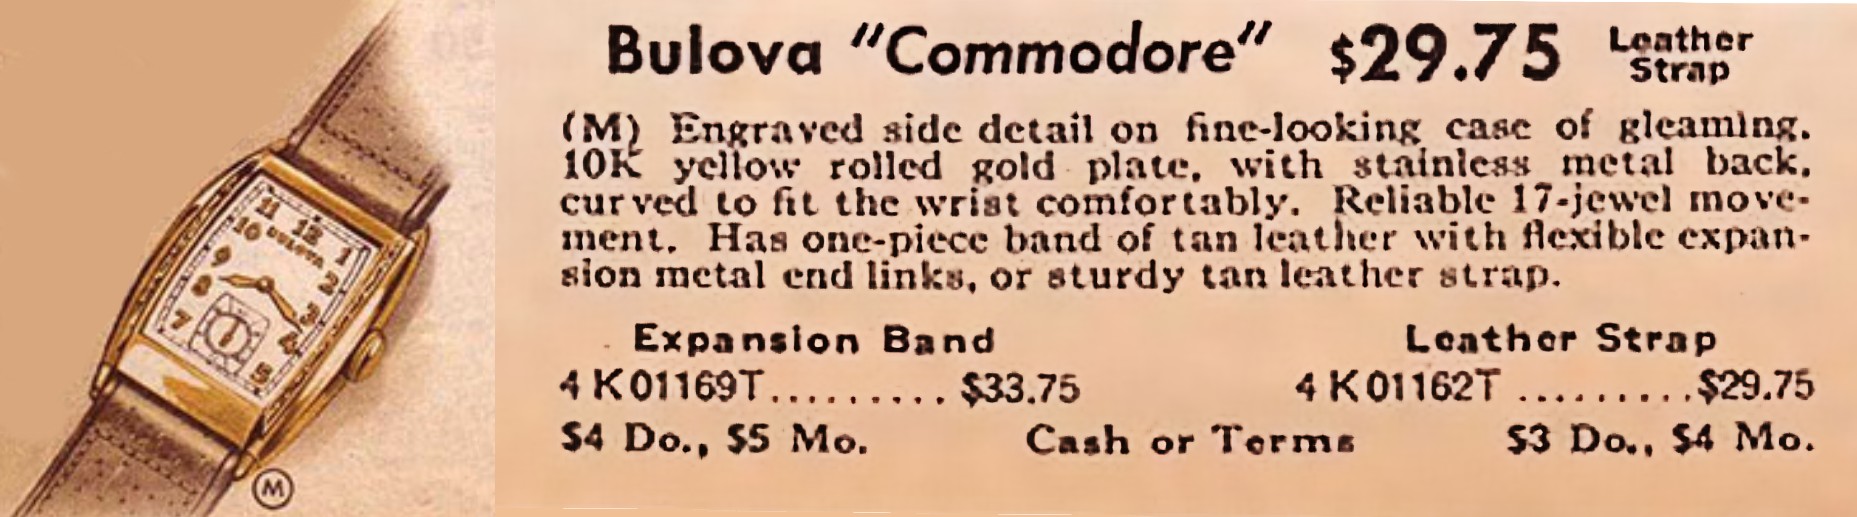 1940 Bulova Commodore